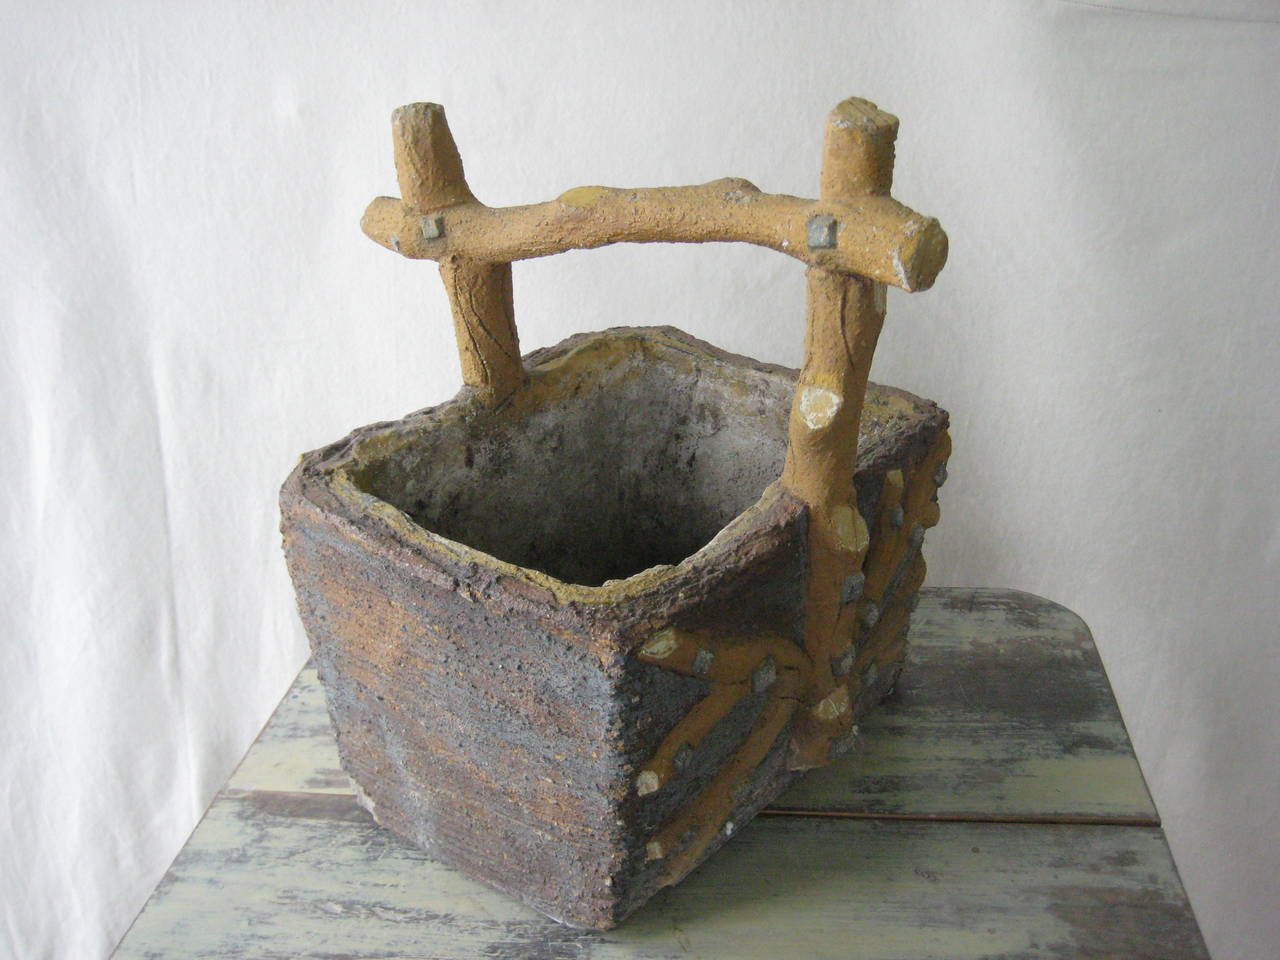 Faux de Bois Stone Basket with twig motif